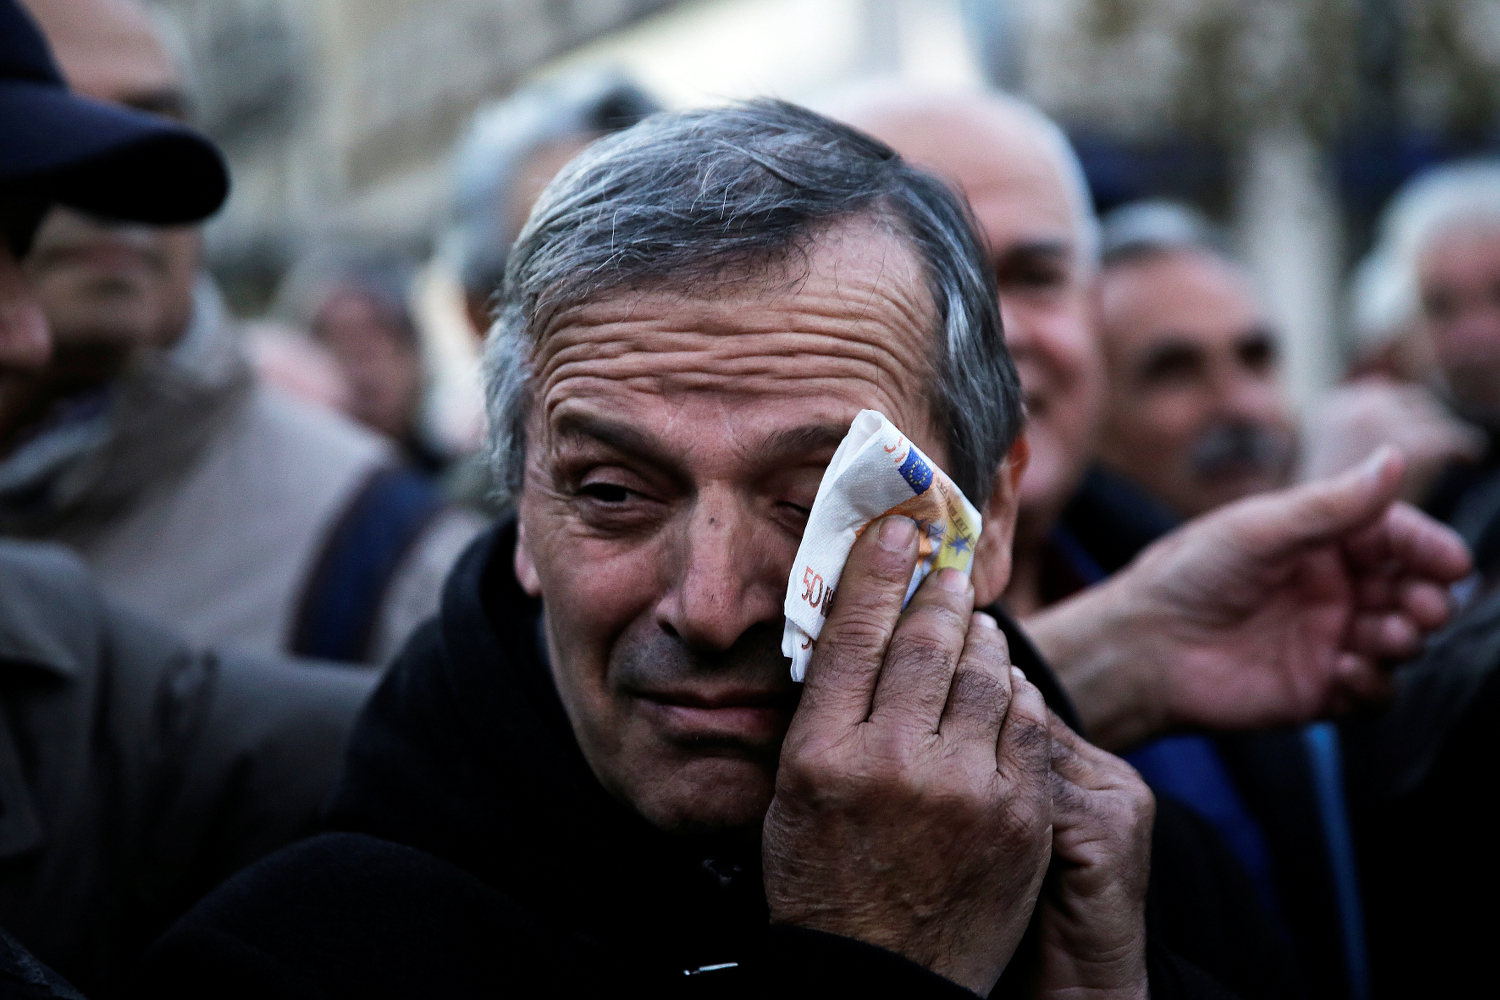 Grecia se planta ante sus acreedores y decide devolver la paga extra a los pensionistas